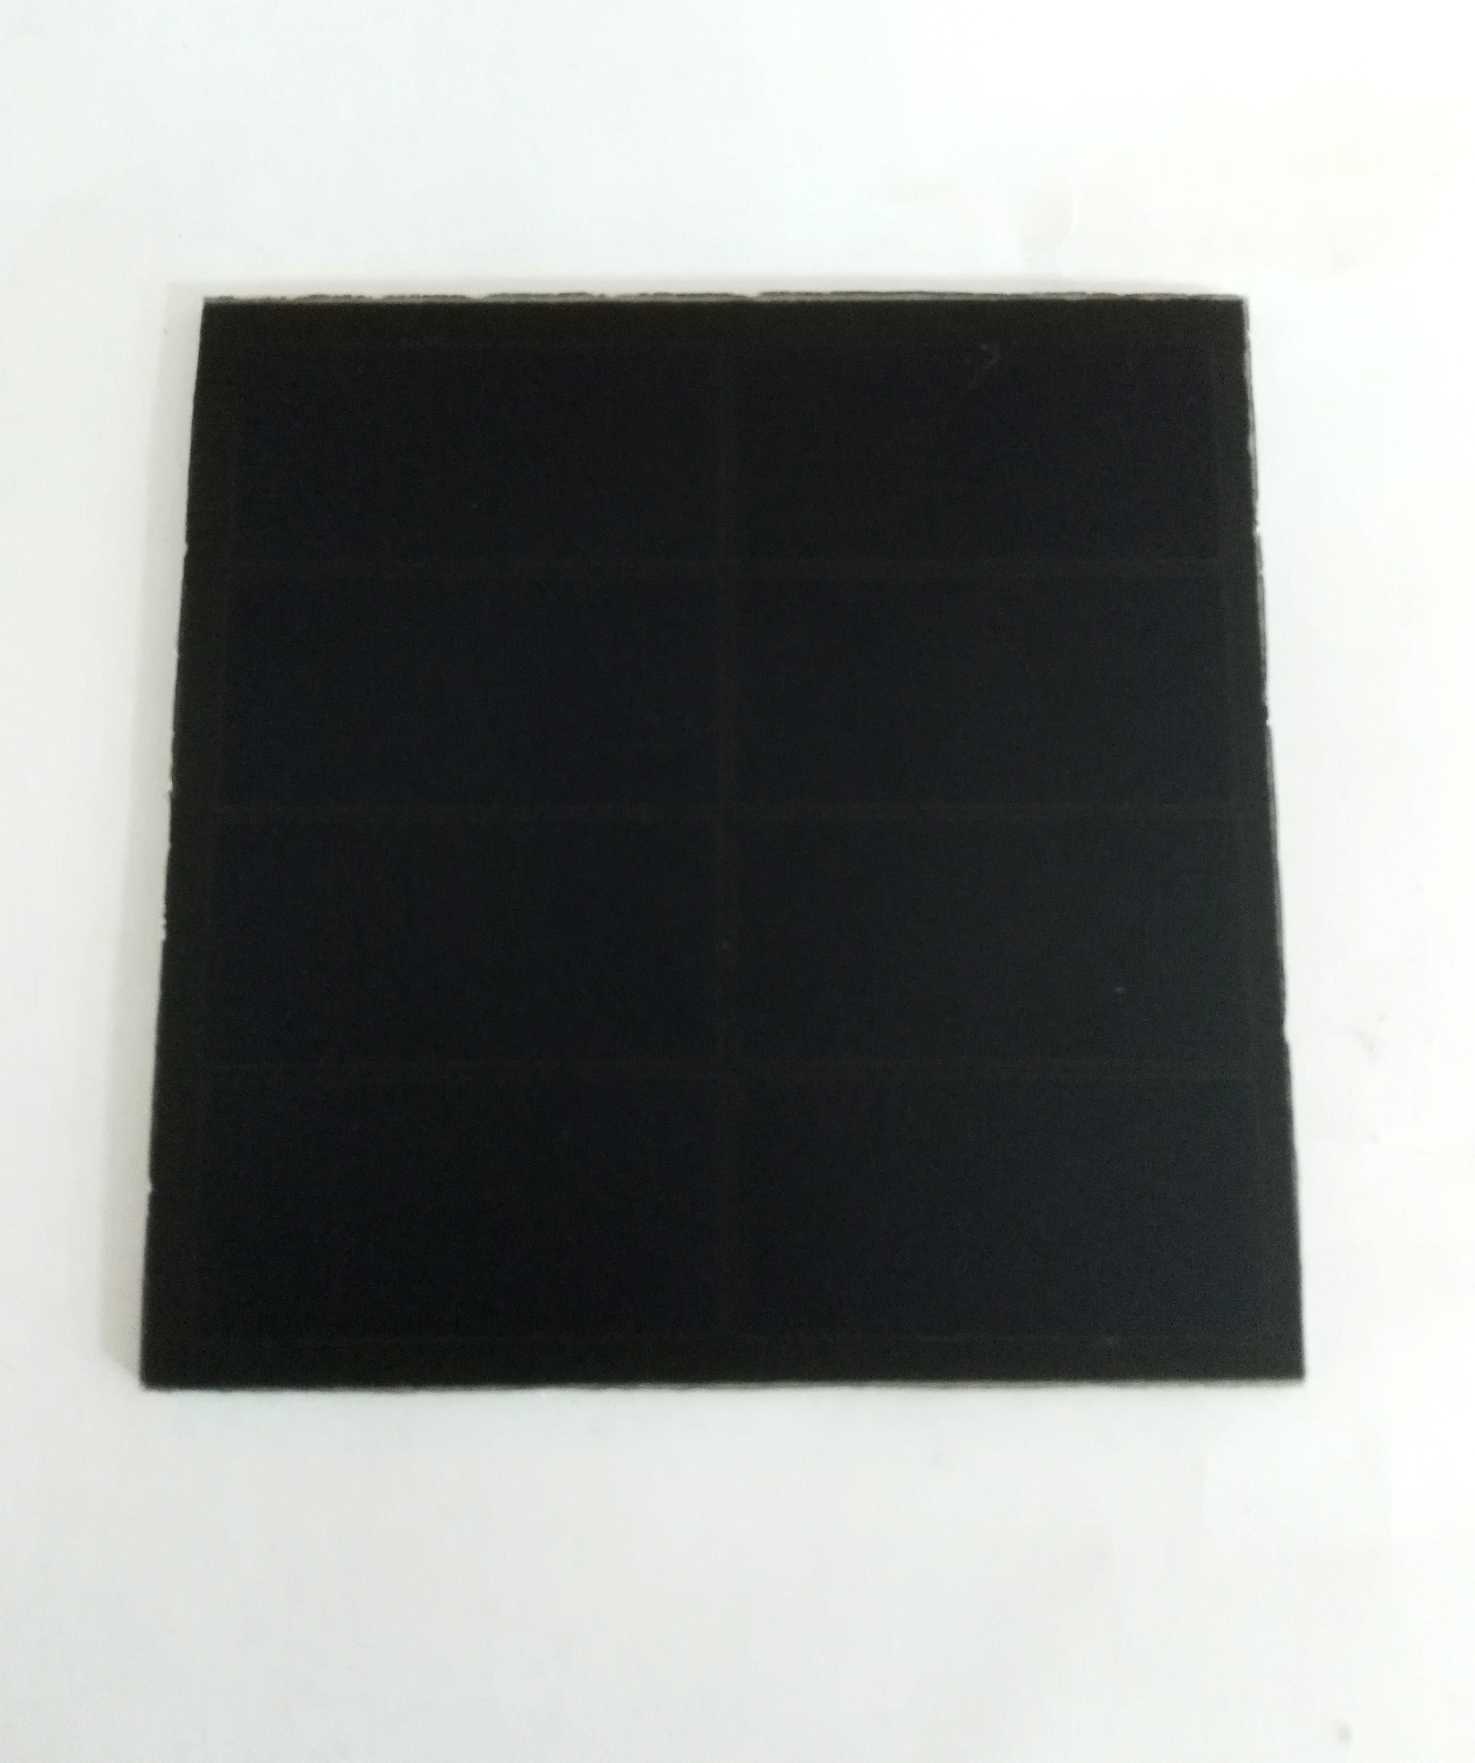 供应其他尺寸sunpower硅片高效太阳能电池板 迪晟DS6060